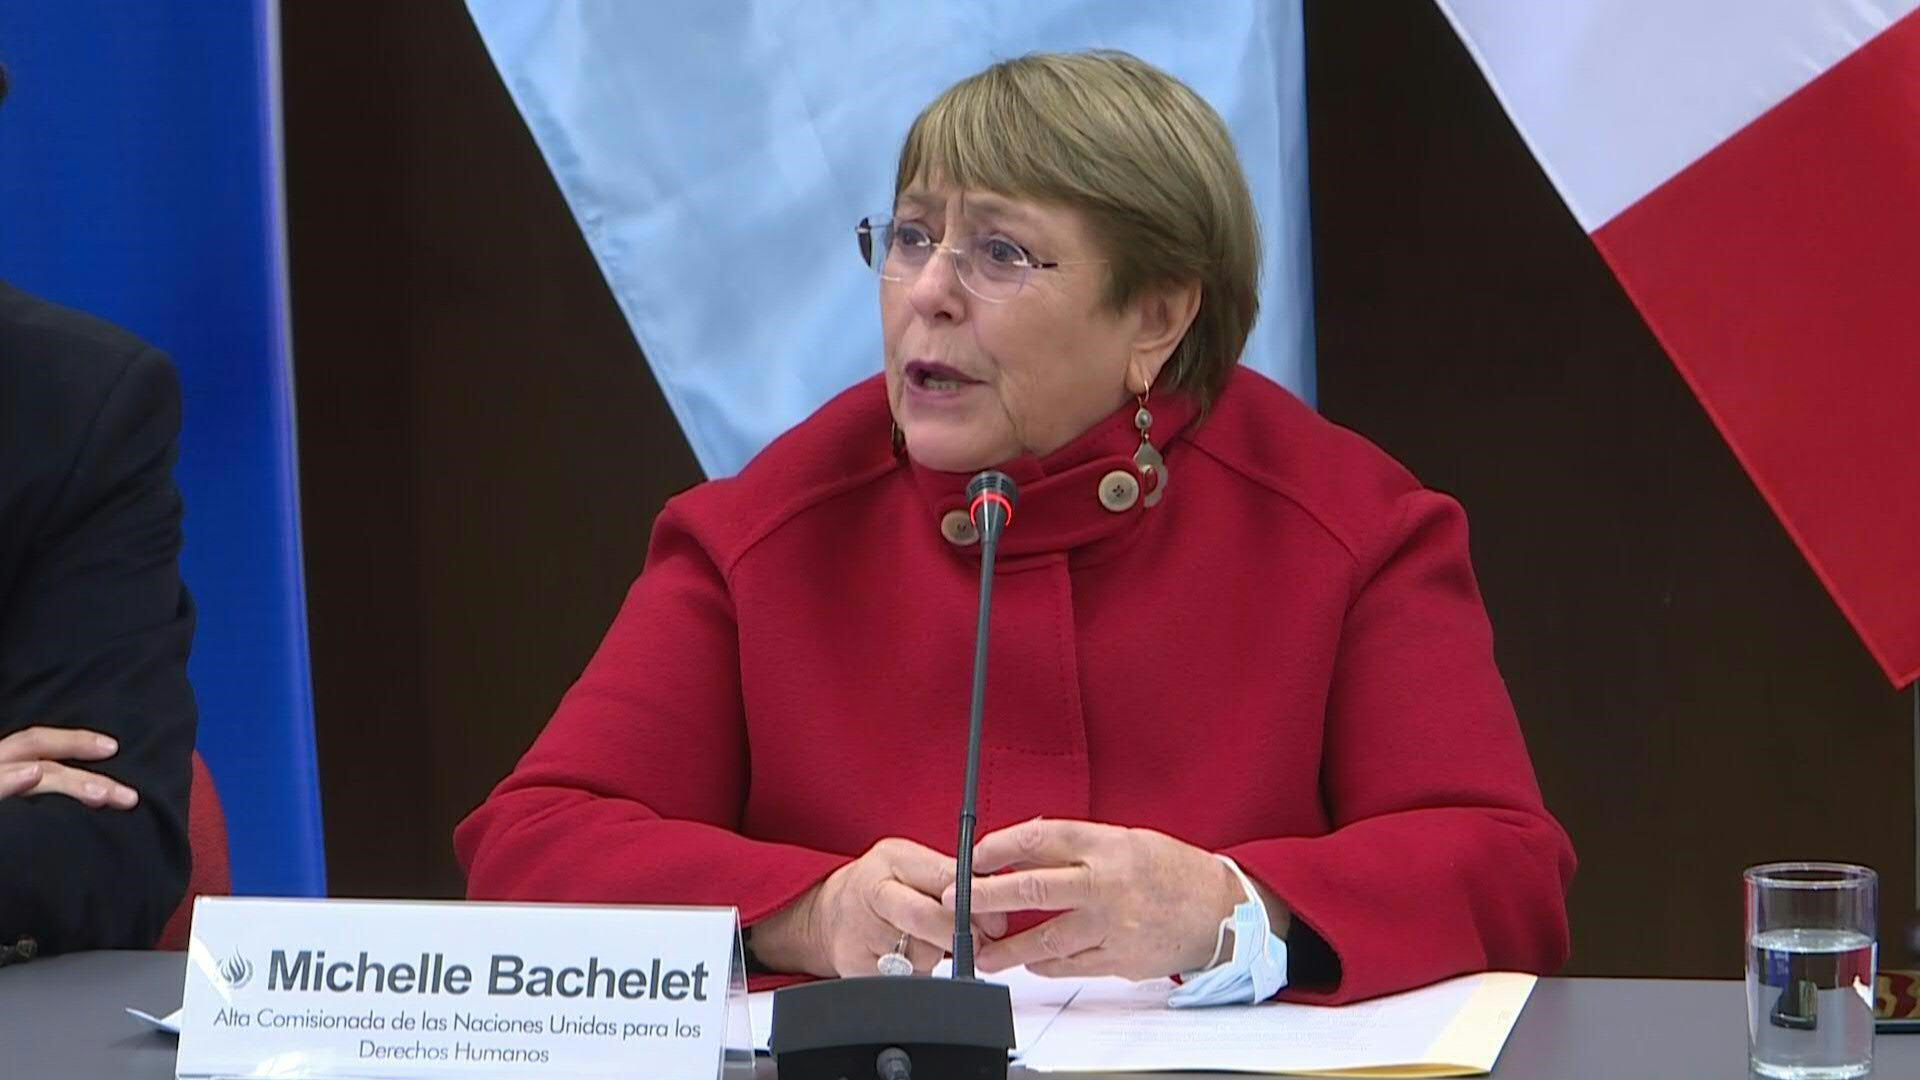 Bachelet preocupada por crecimiento de agenda antiderechos en Perú